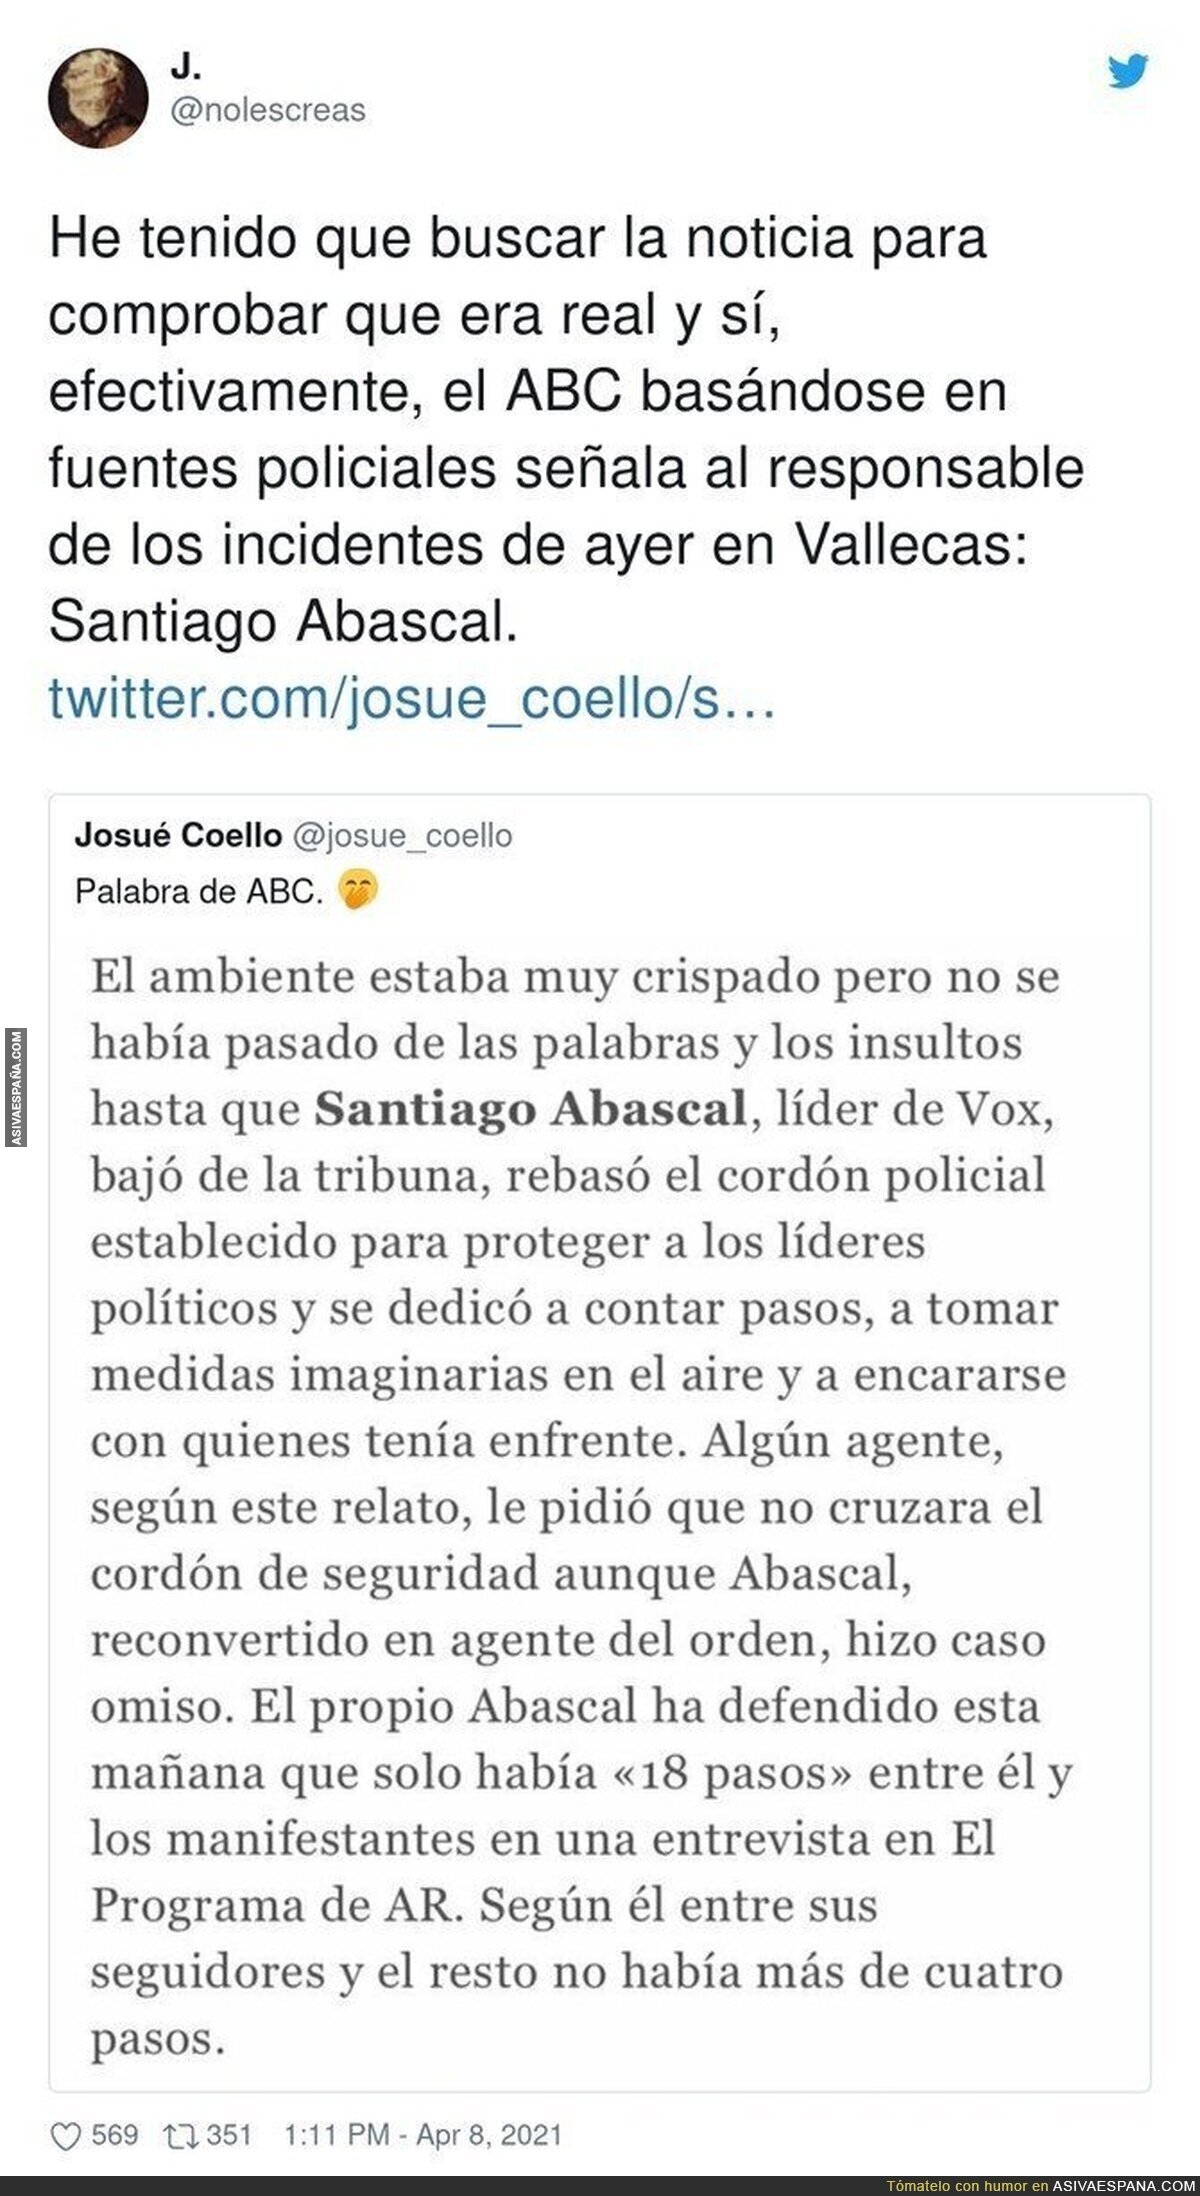 La Policía lo tiene claro: El culpable de todo en Vallecas es Santiago Abascal